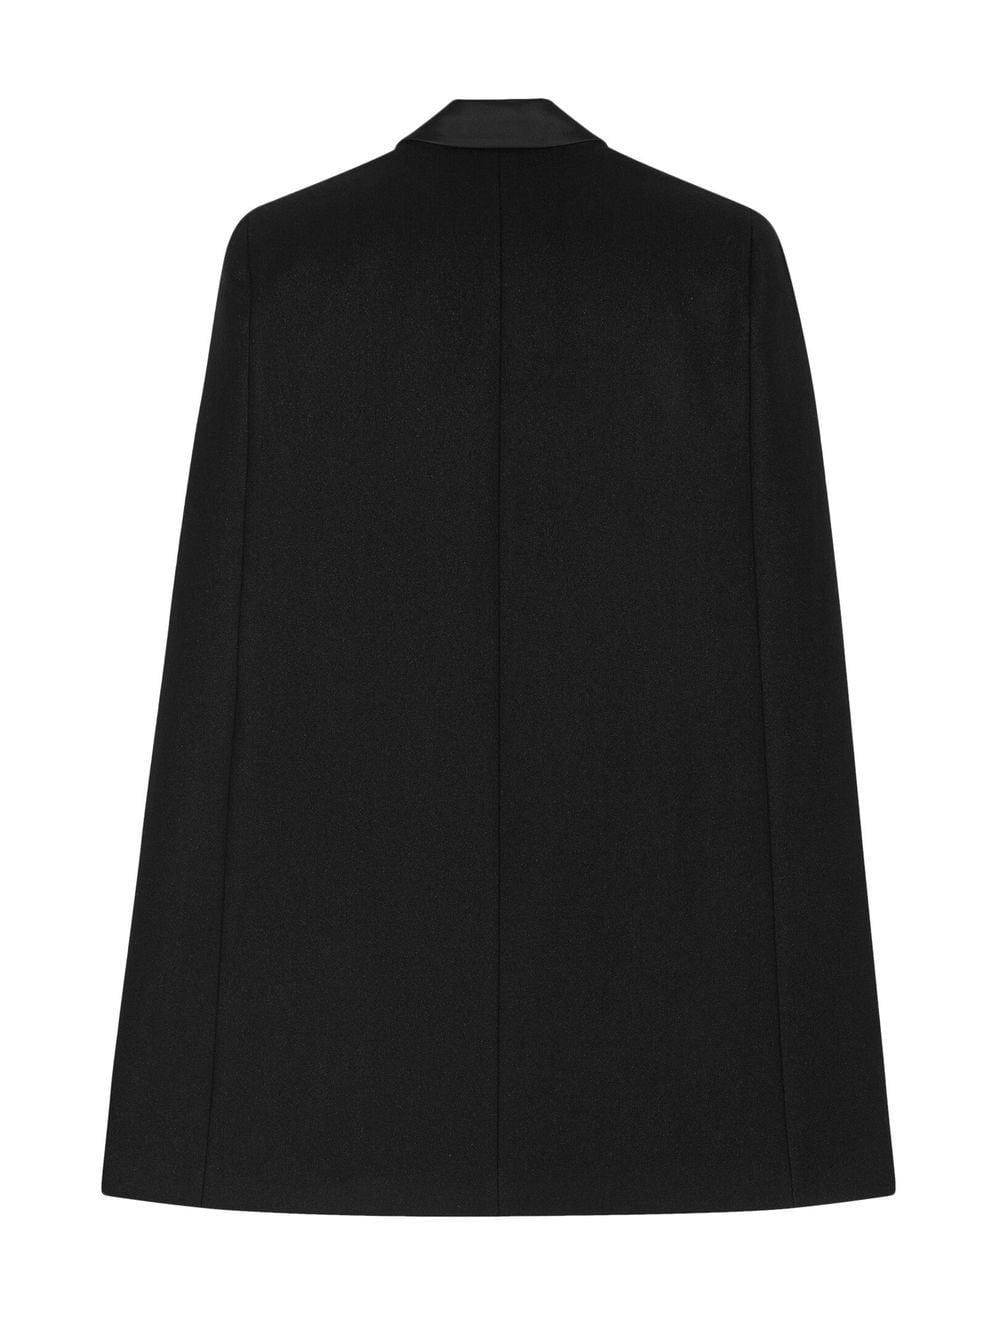 Saint Laurent wool-blend tuxedo cape - Black